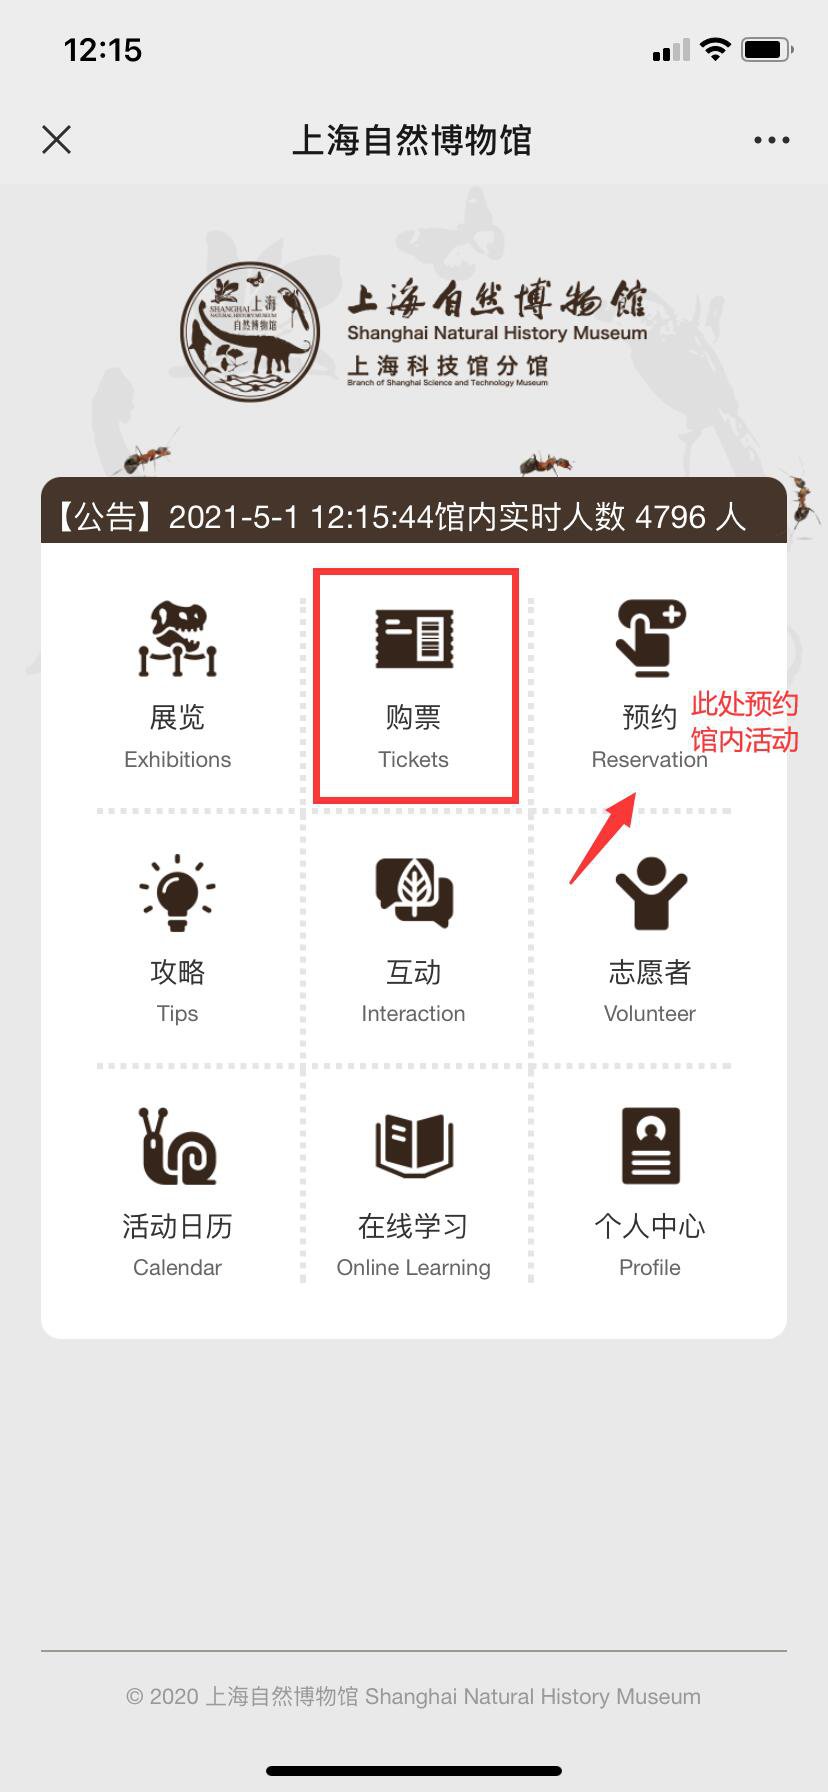 上海自然博物馆网上预约方式+接待人数